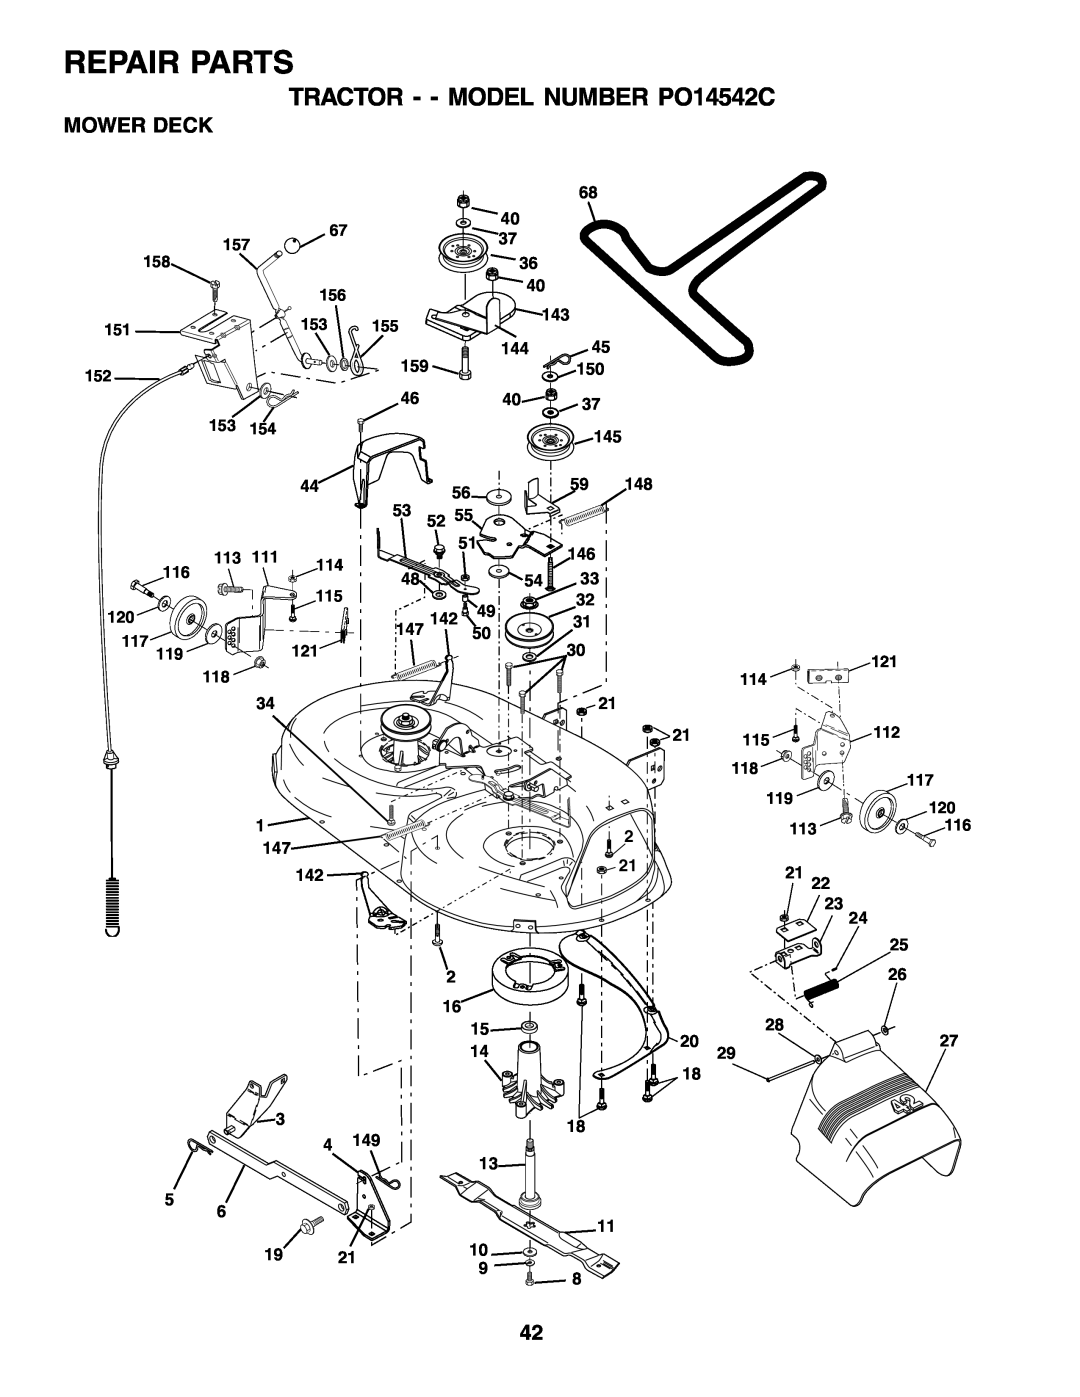 Poulan manual Repair Parts, TRACTOR - - MODEL NUMBER PO14542C, Mower Deck 